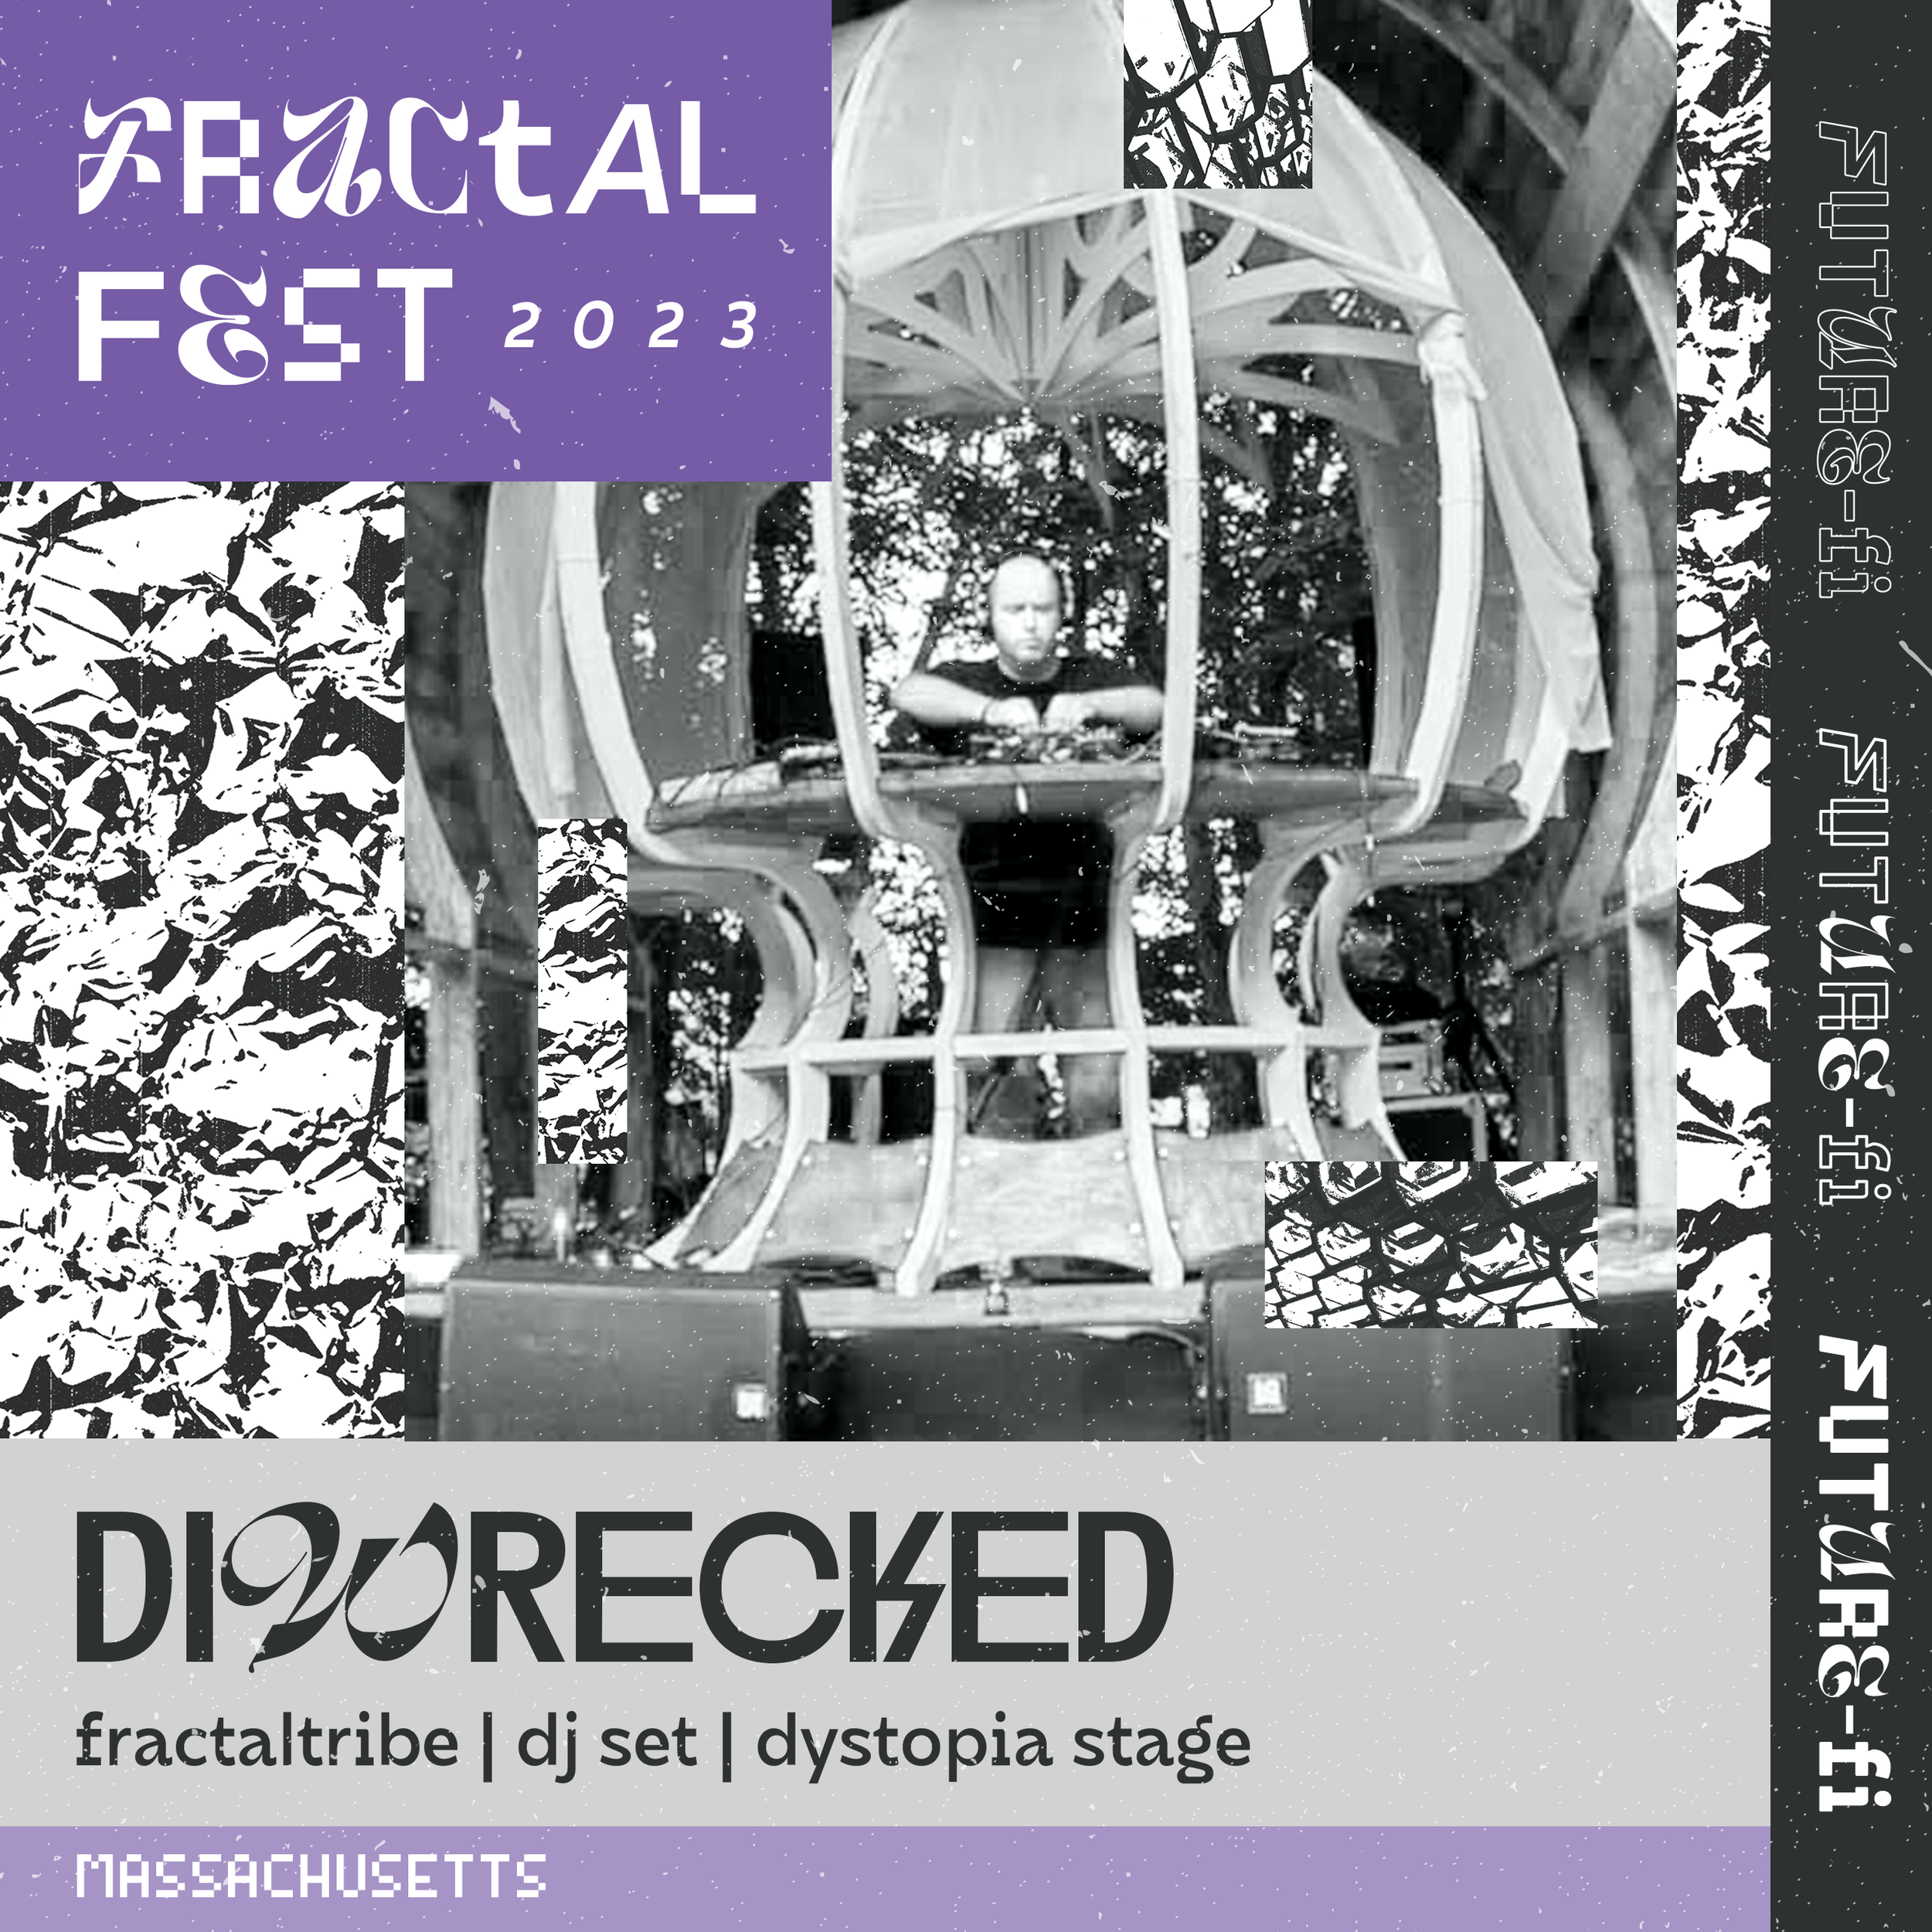 DiWrecked - Fractalfest2018_2889-DiWrecked-WM.jpg